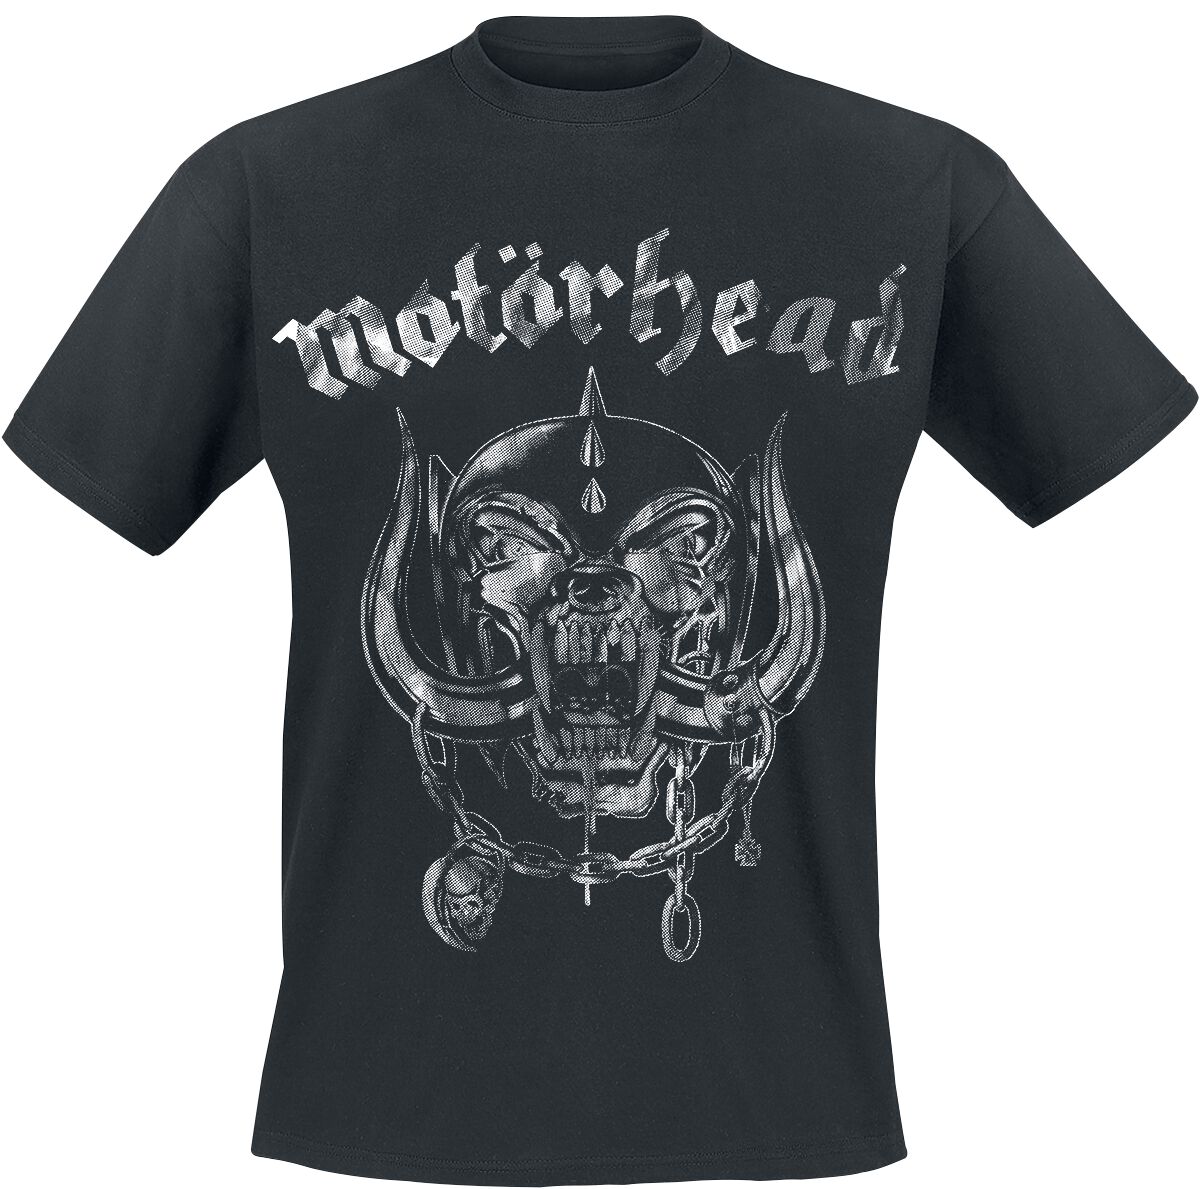 Motörhead T-Shirt - Large Warpig Logo - S bis 4XL - für Männer - Größe M - schwarz  - Lizenziertes Merchandise!